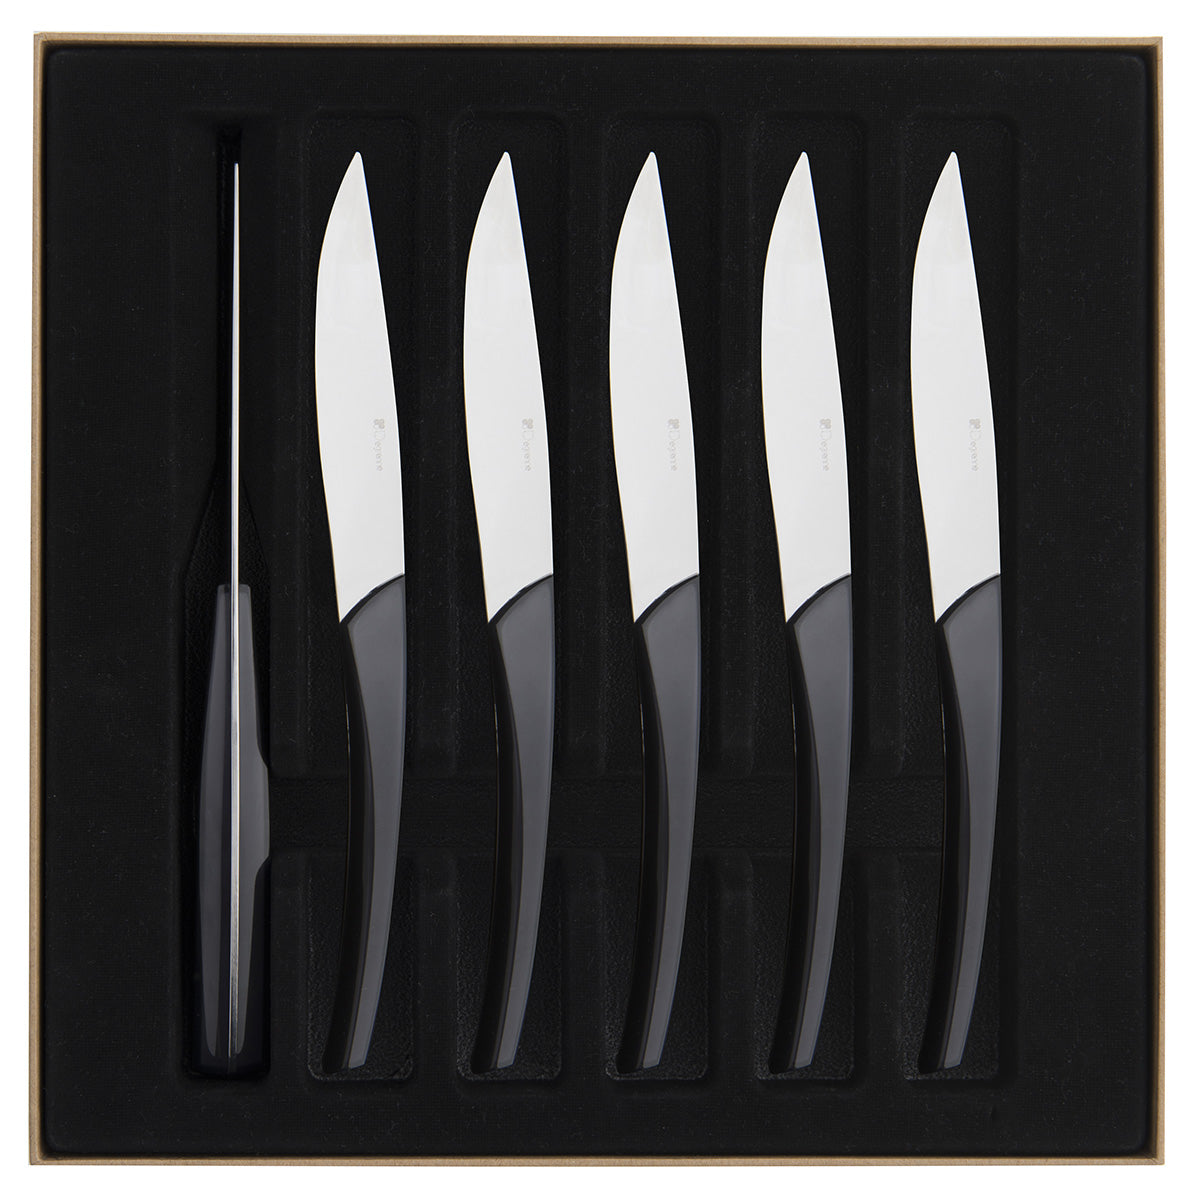 Guy Degrenne - Quartz Steak Knives Set of 6, Carbon